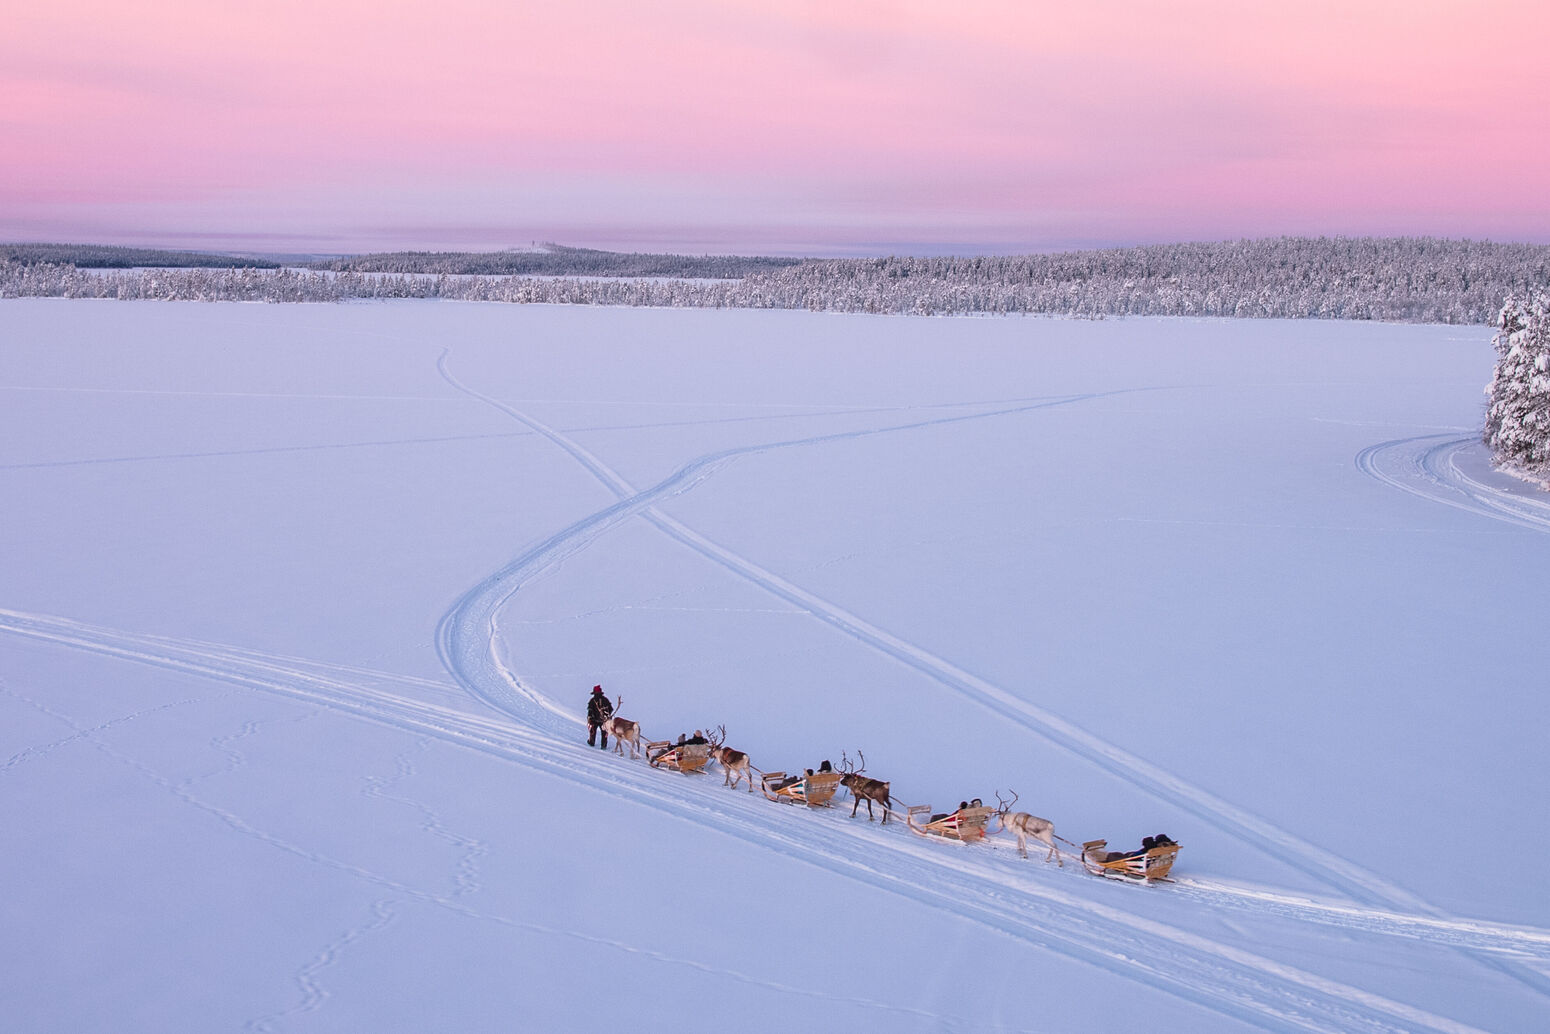 antti pietikäinen, drone winter 2018, harriniva, reindeer safari, torassieppi